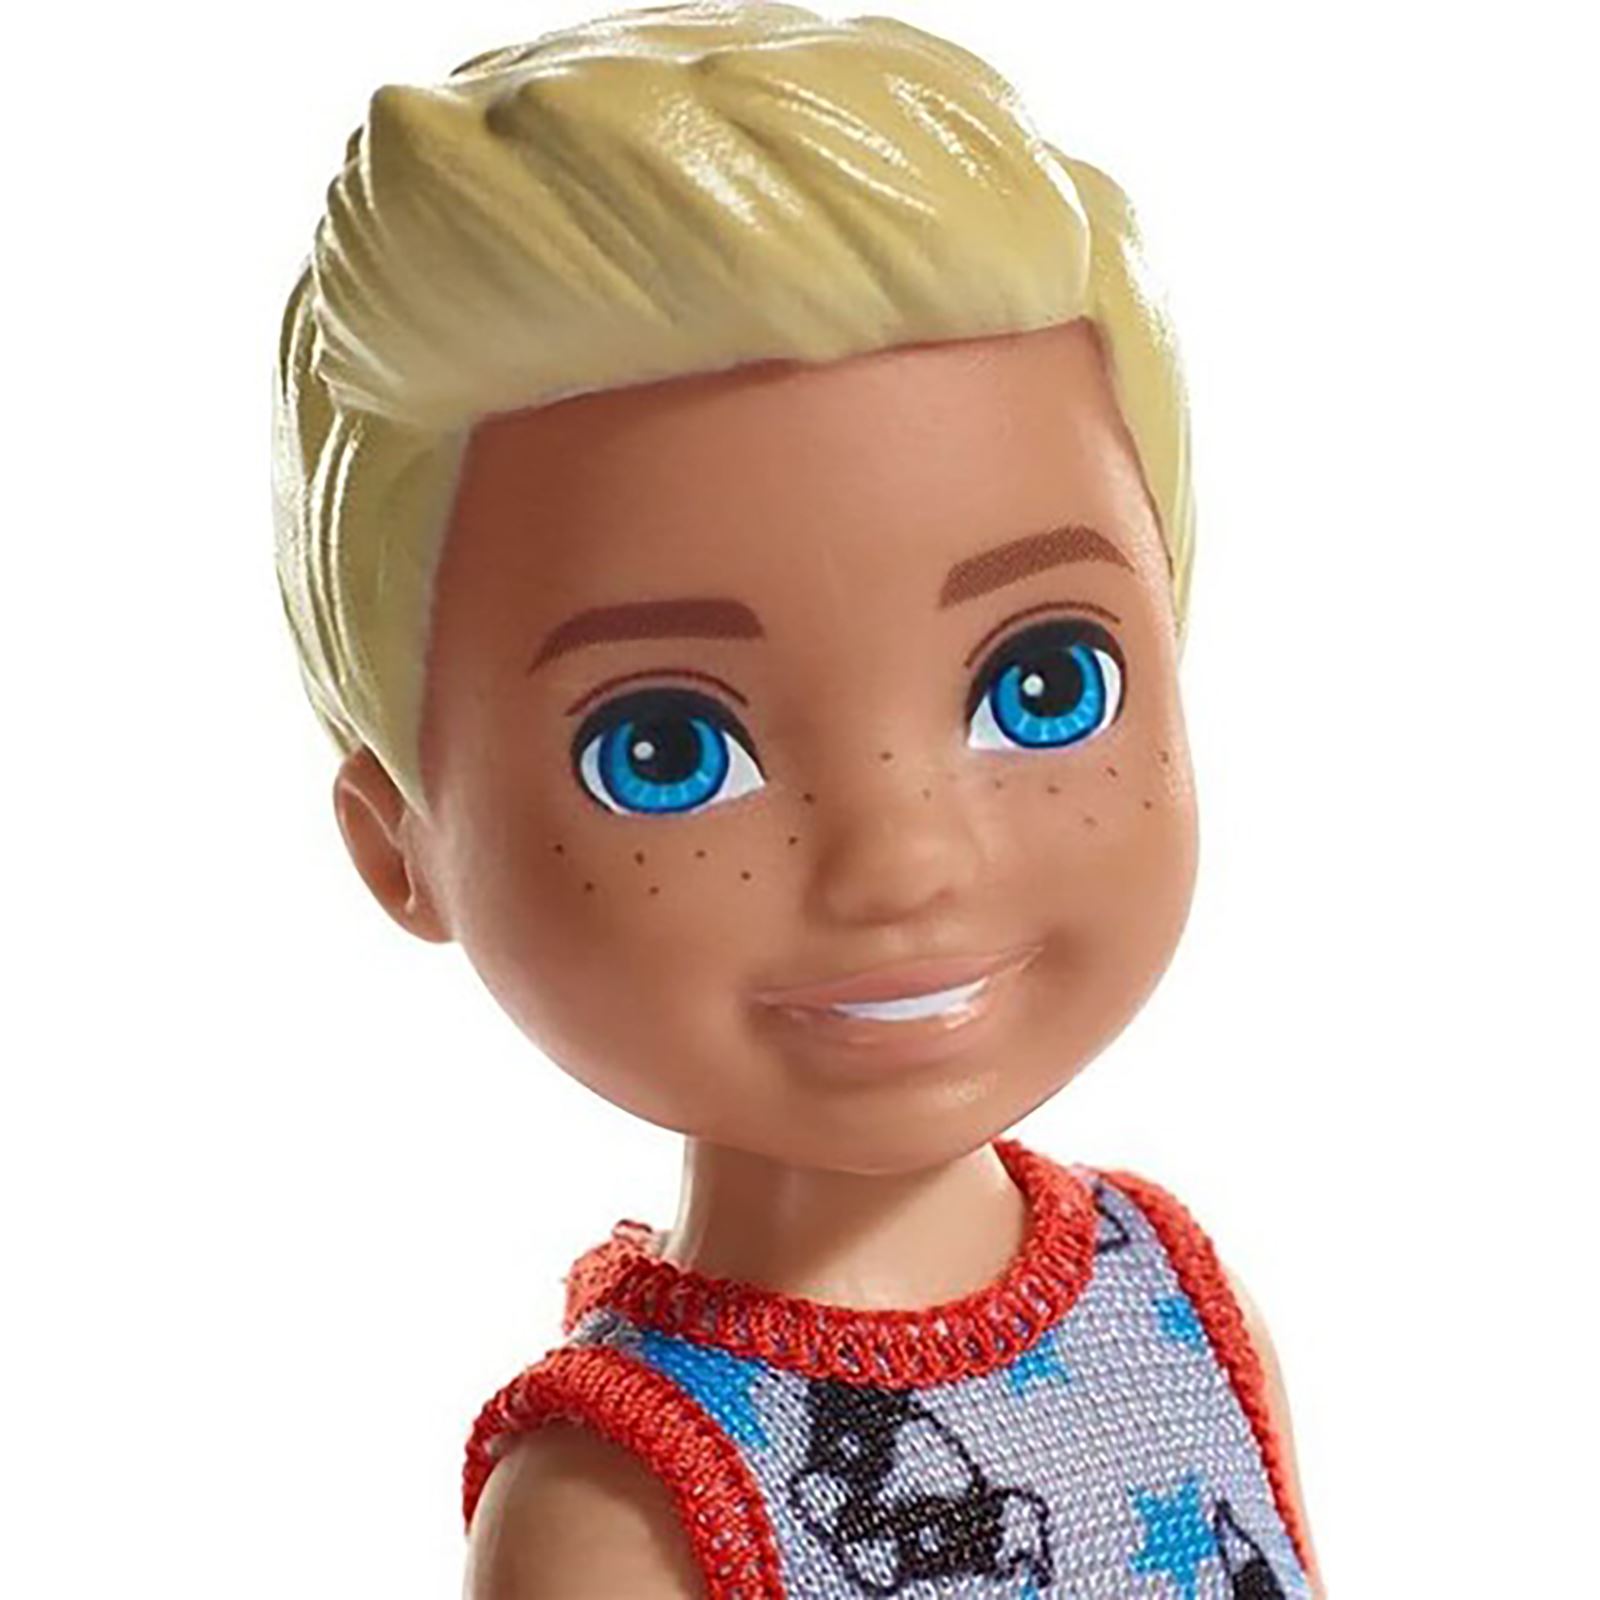 Barbie Chelsea Bebekler Mavi